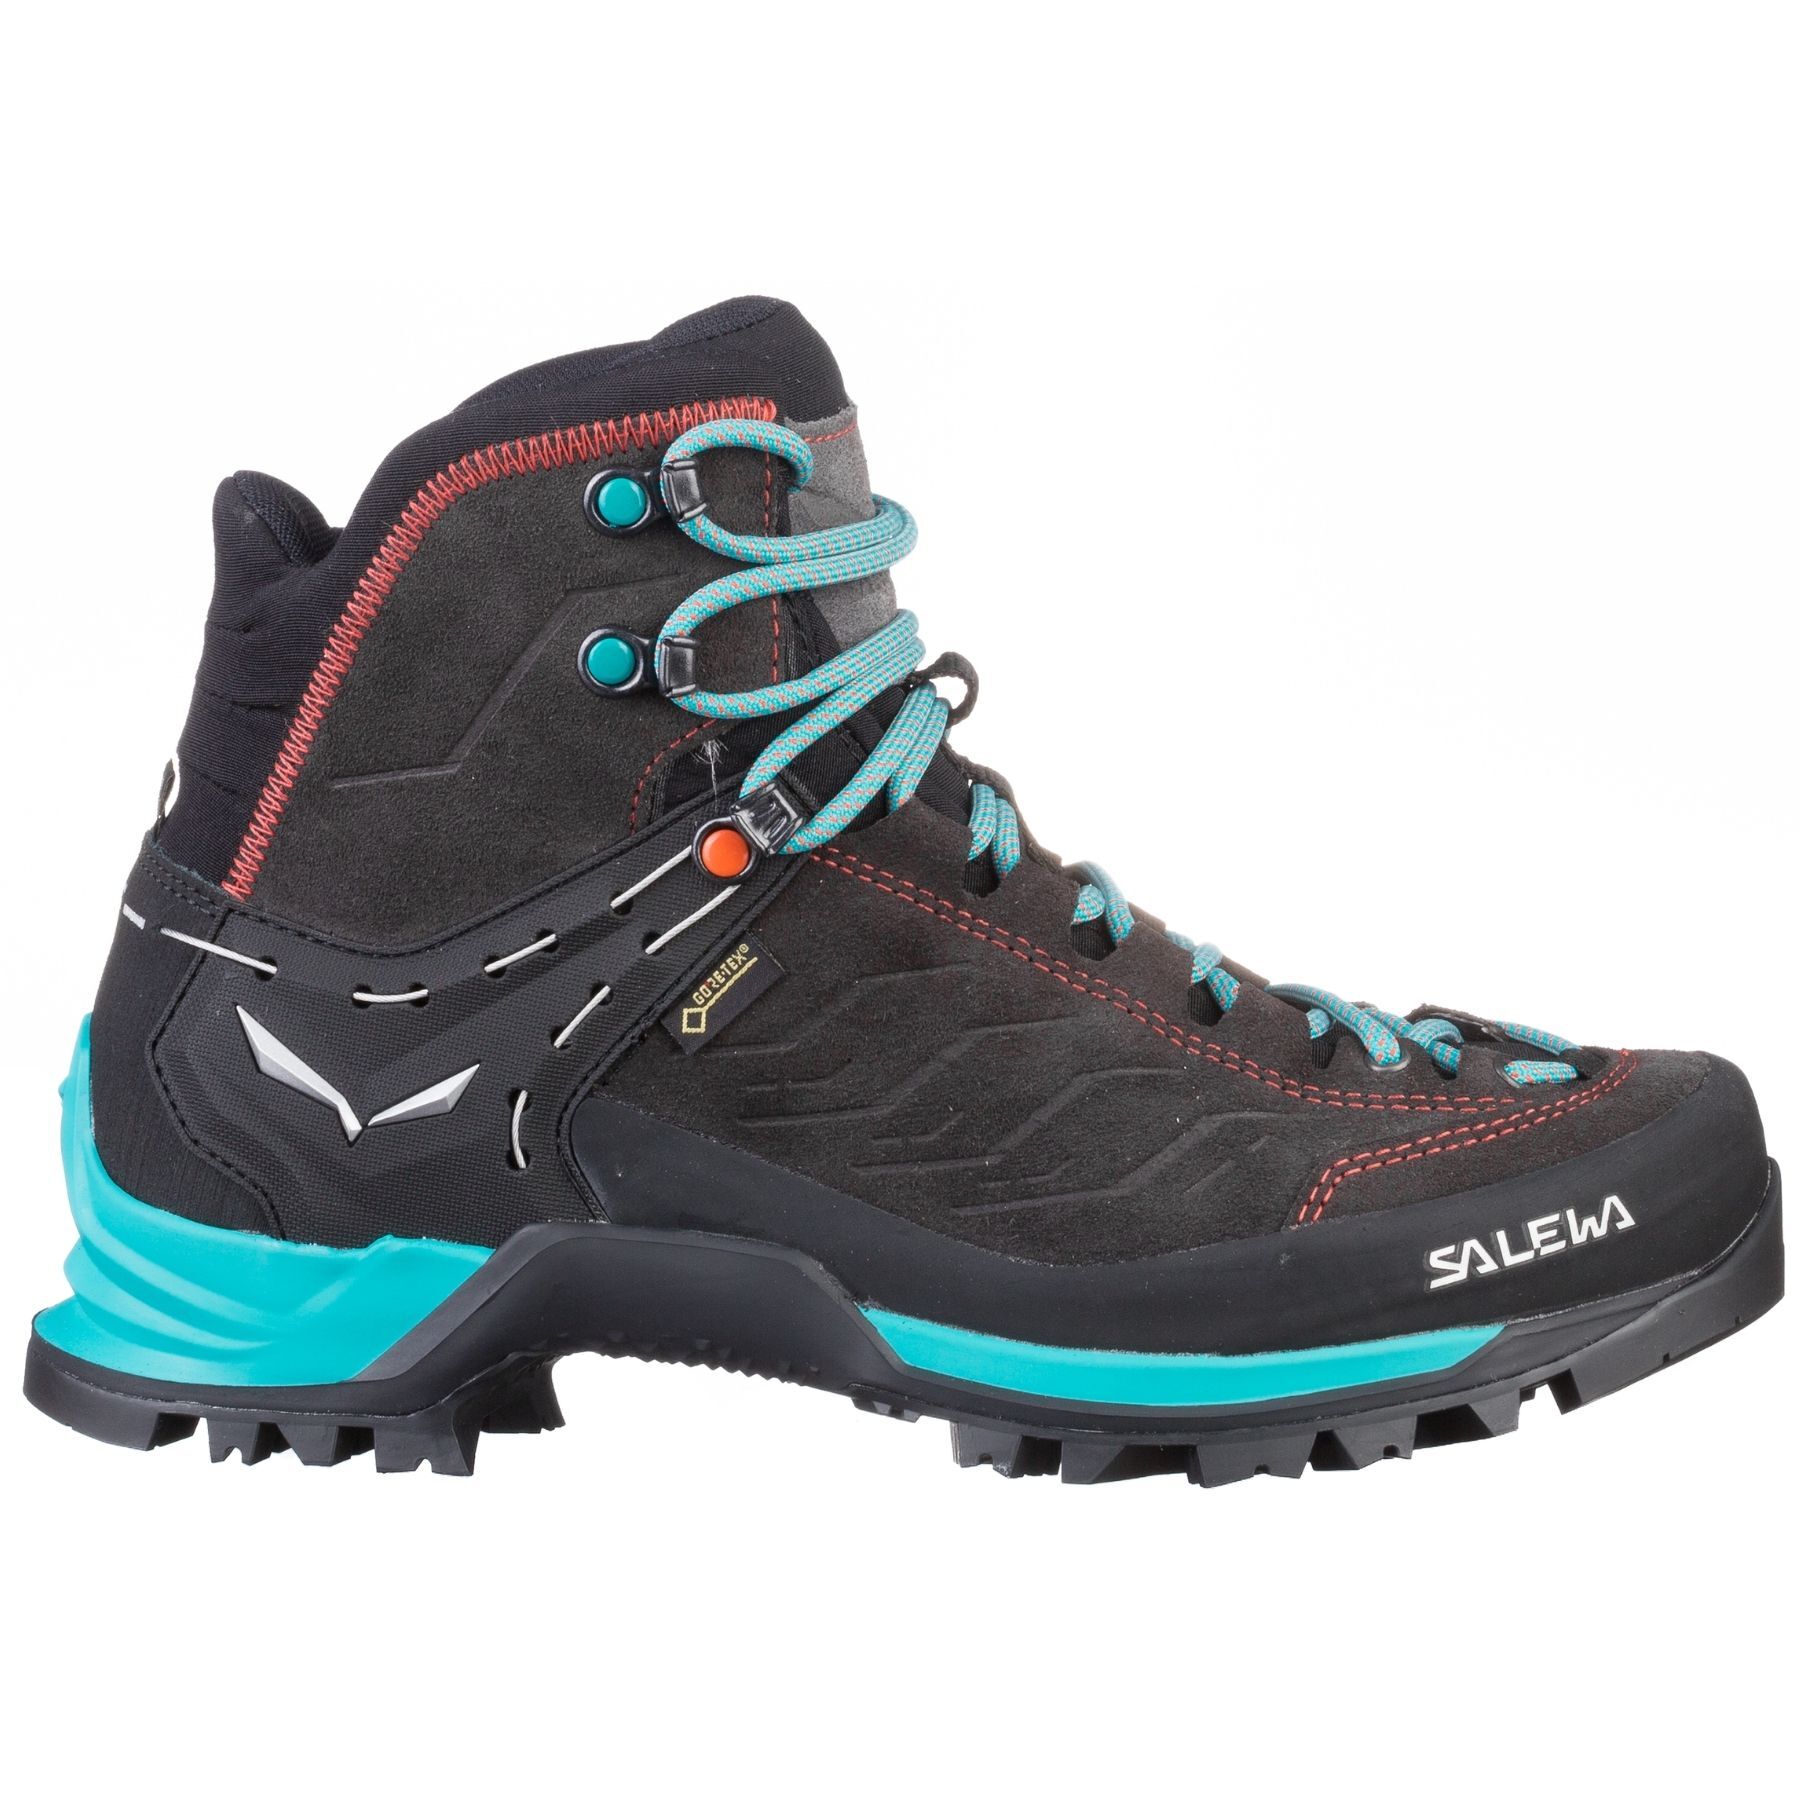 Salewa - Ws Mtn Trainer Mid GTX - Hiking boots - Women's